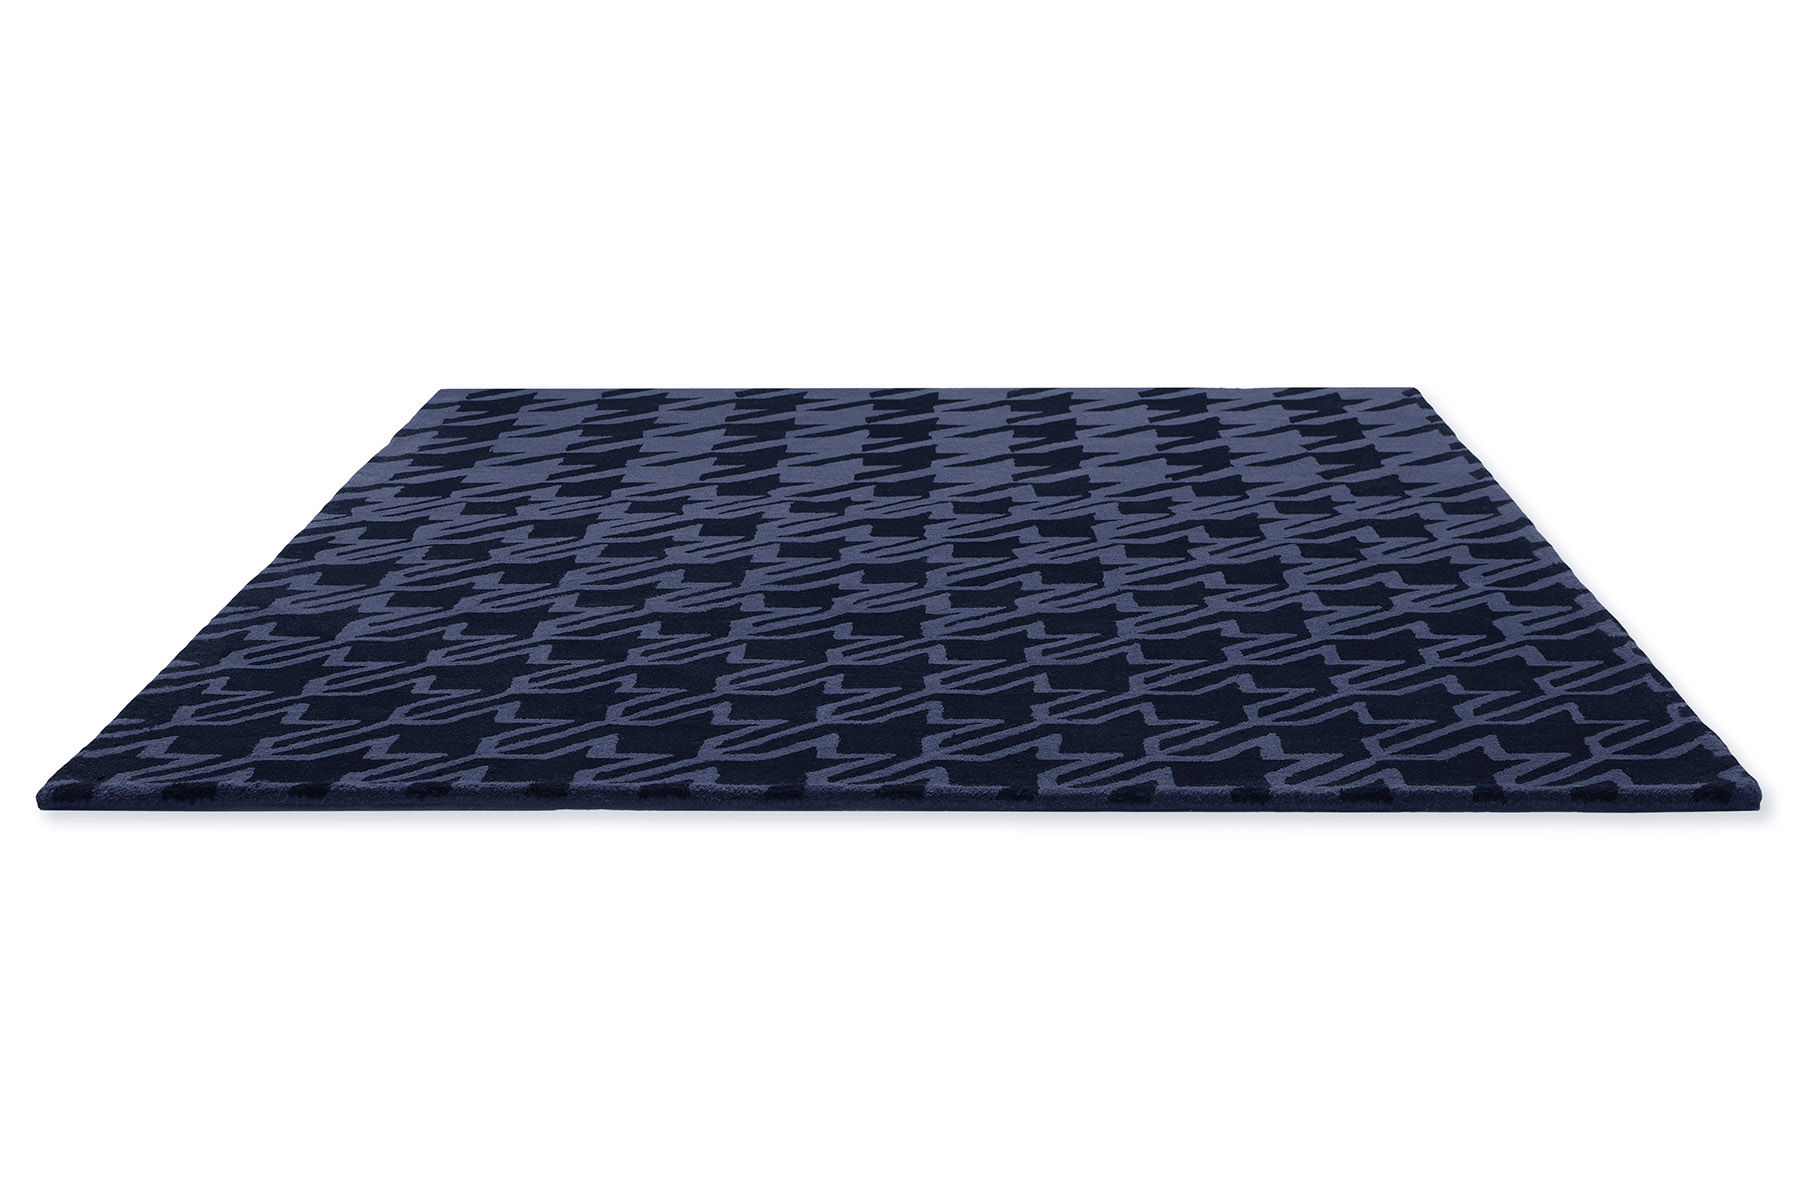 Houndstooth Dark Blue Designer Rug ☞ Size: 5' 7" x 8' (170 x 240 cm)